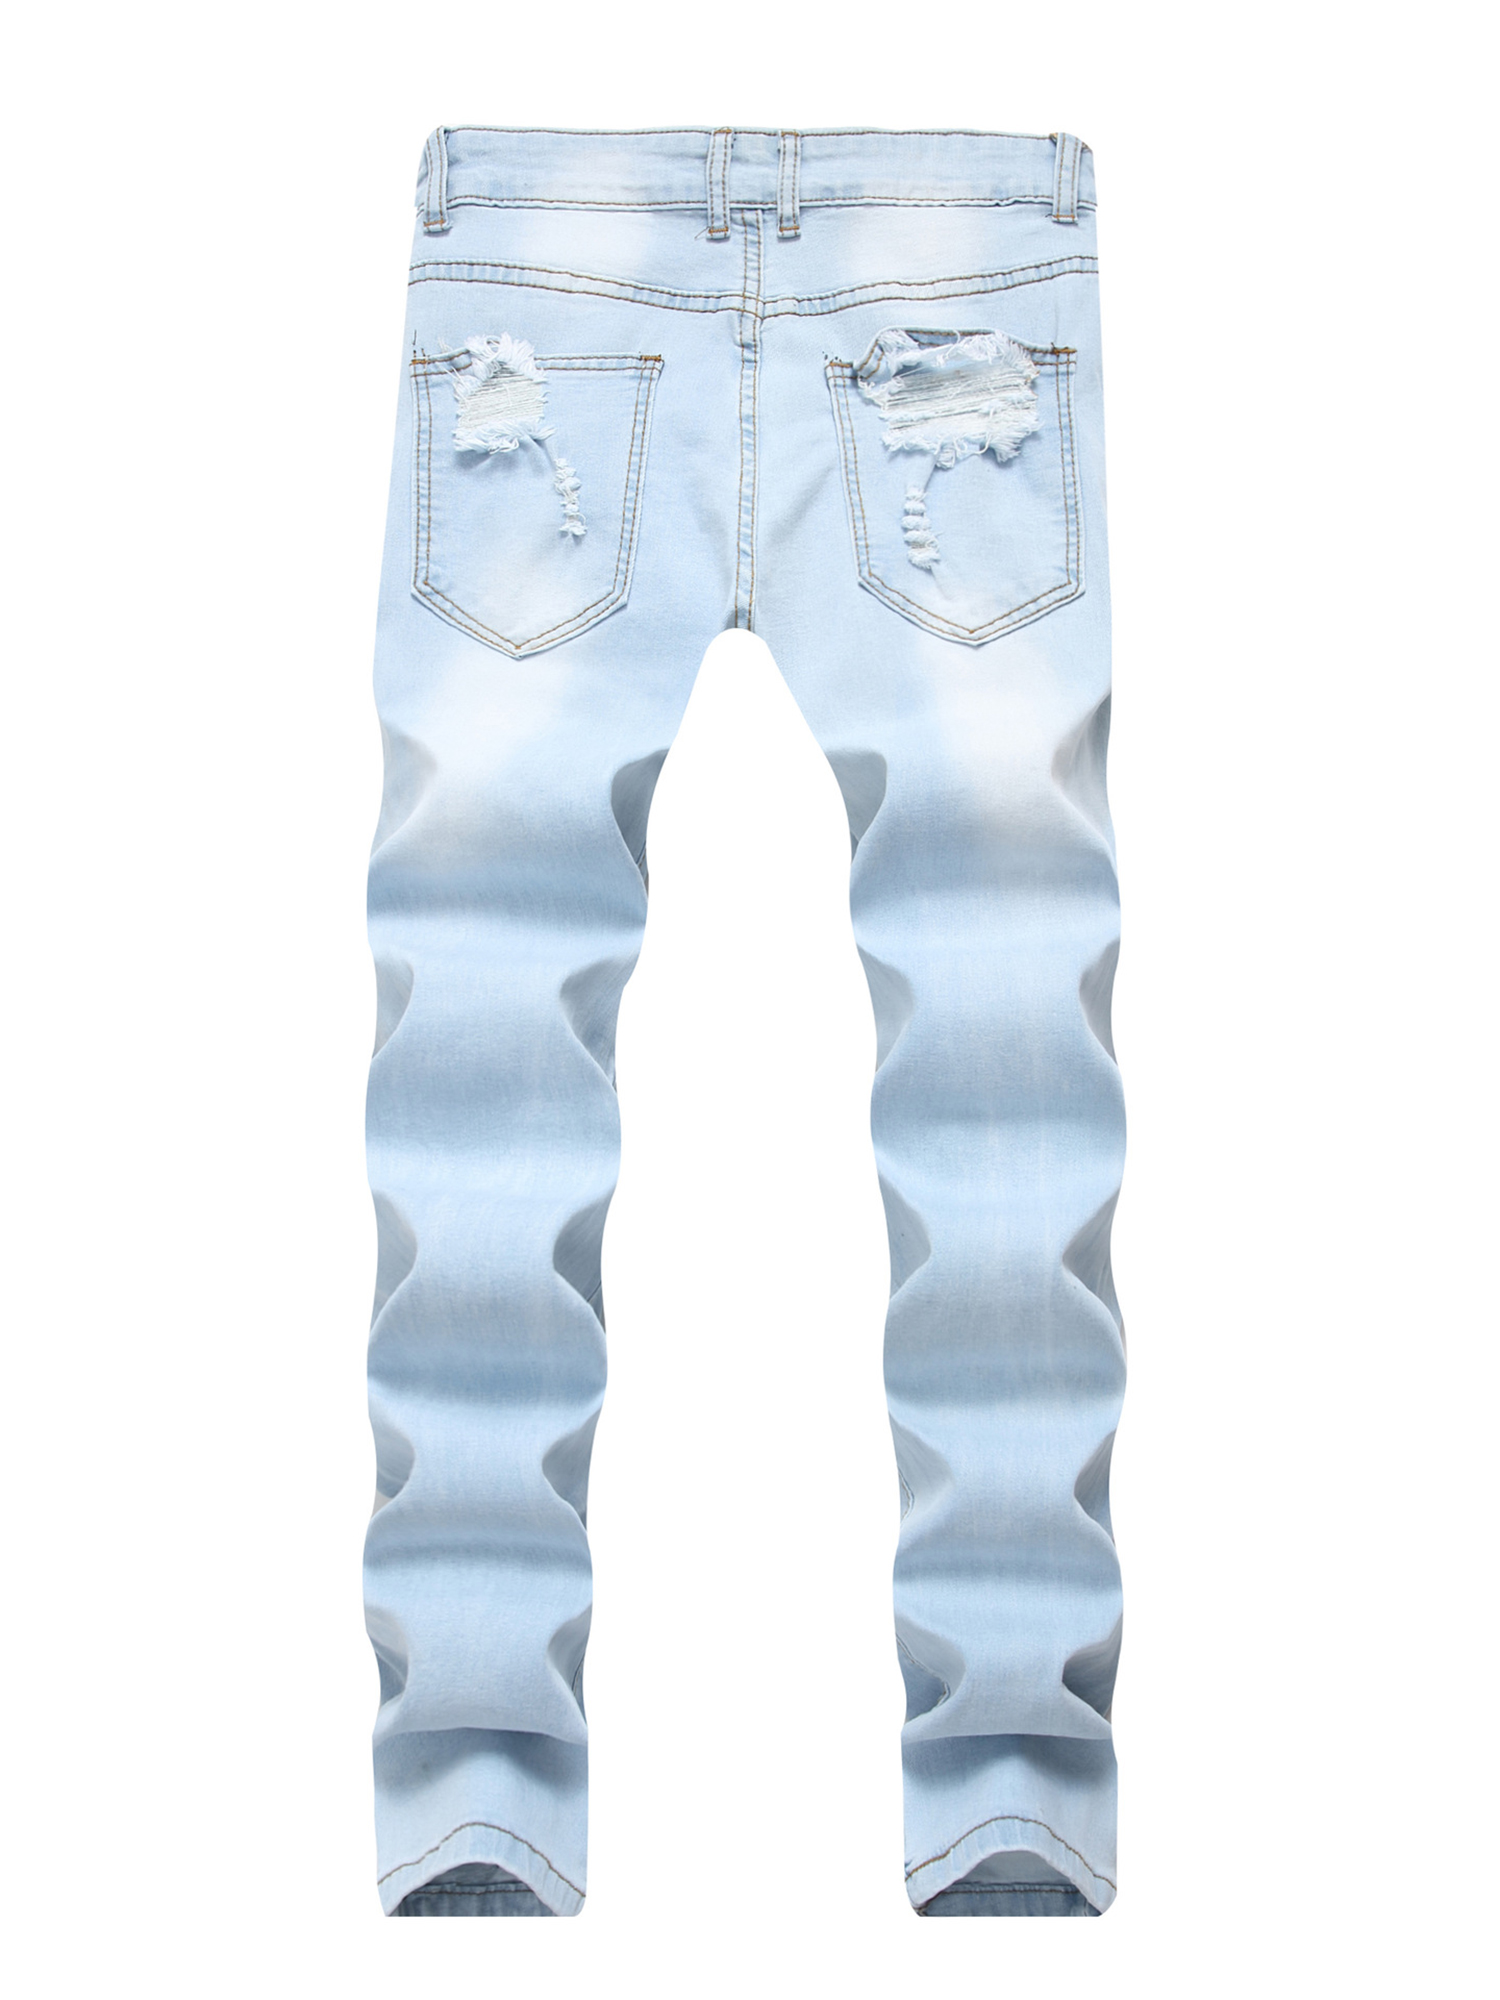 Ripped Distressed Destroyed Slim Fit Washed Denim Jeans for Men Vintage Stretch Skinny Jeans Pants for Hip Hop Moto Biker - image 3 of 3